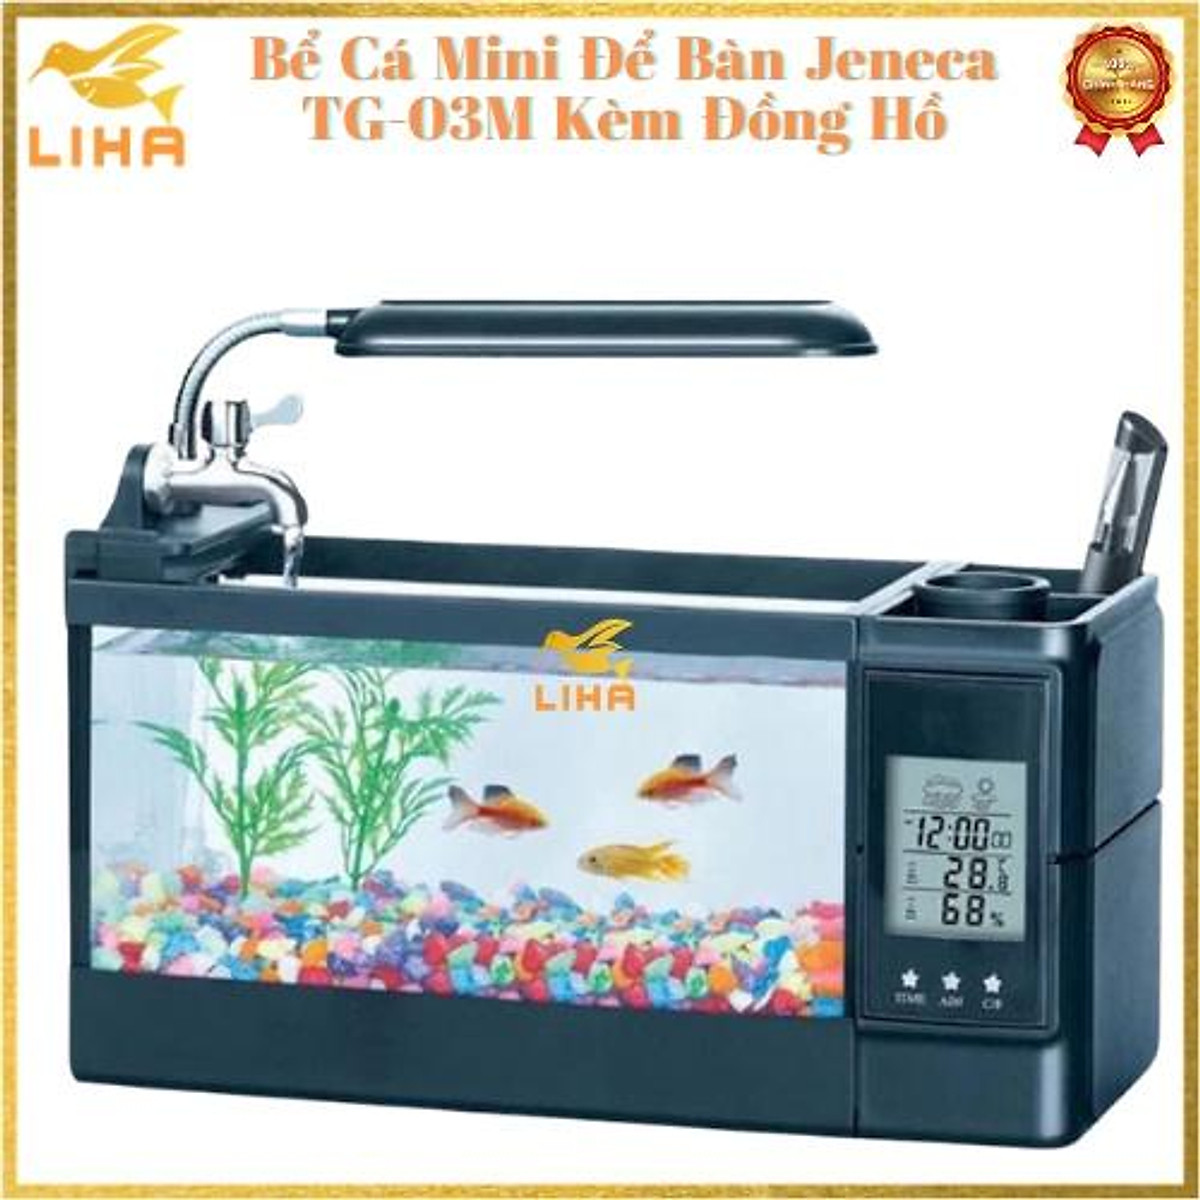 Bể Cá Mini Để Bàn Jeneca TG-03M Kèm Đồng Hồ